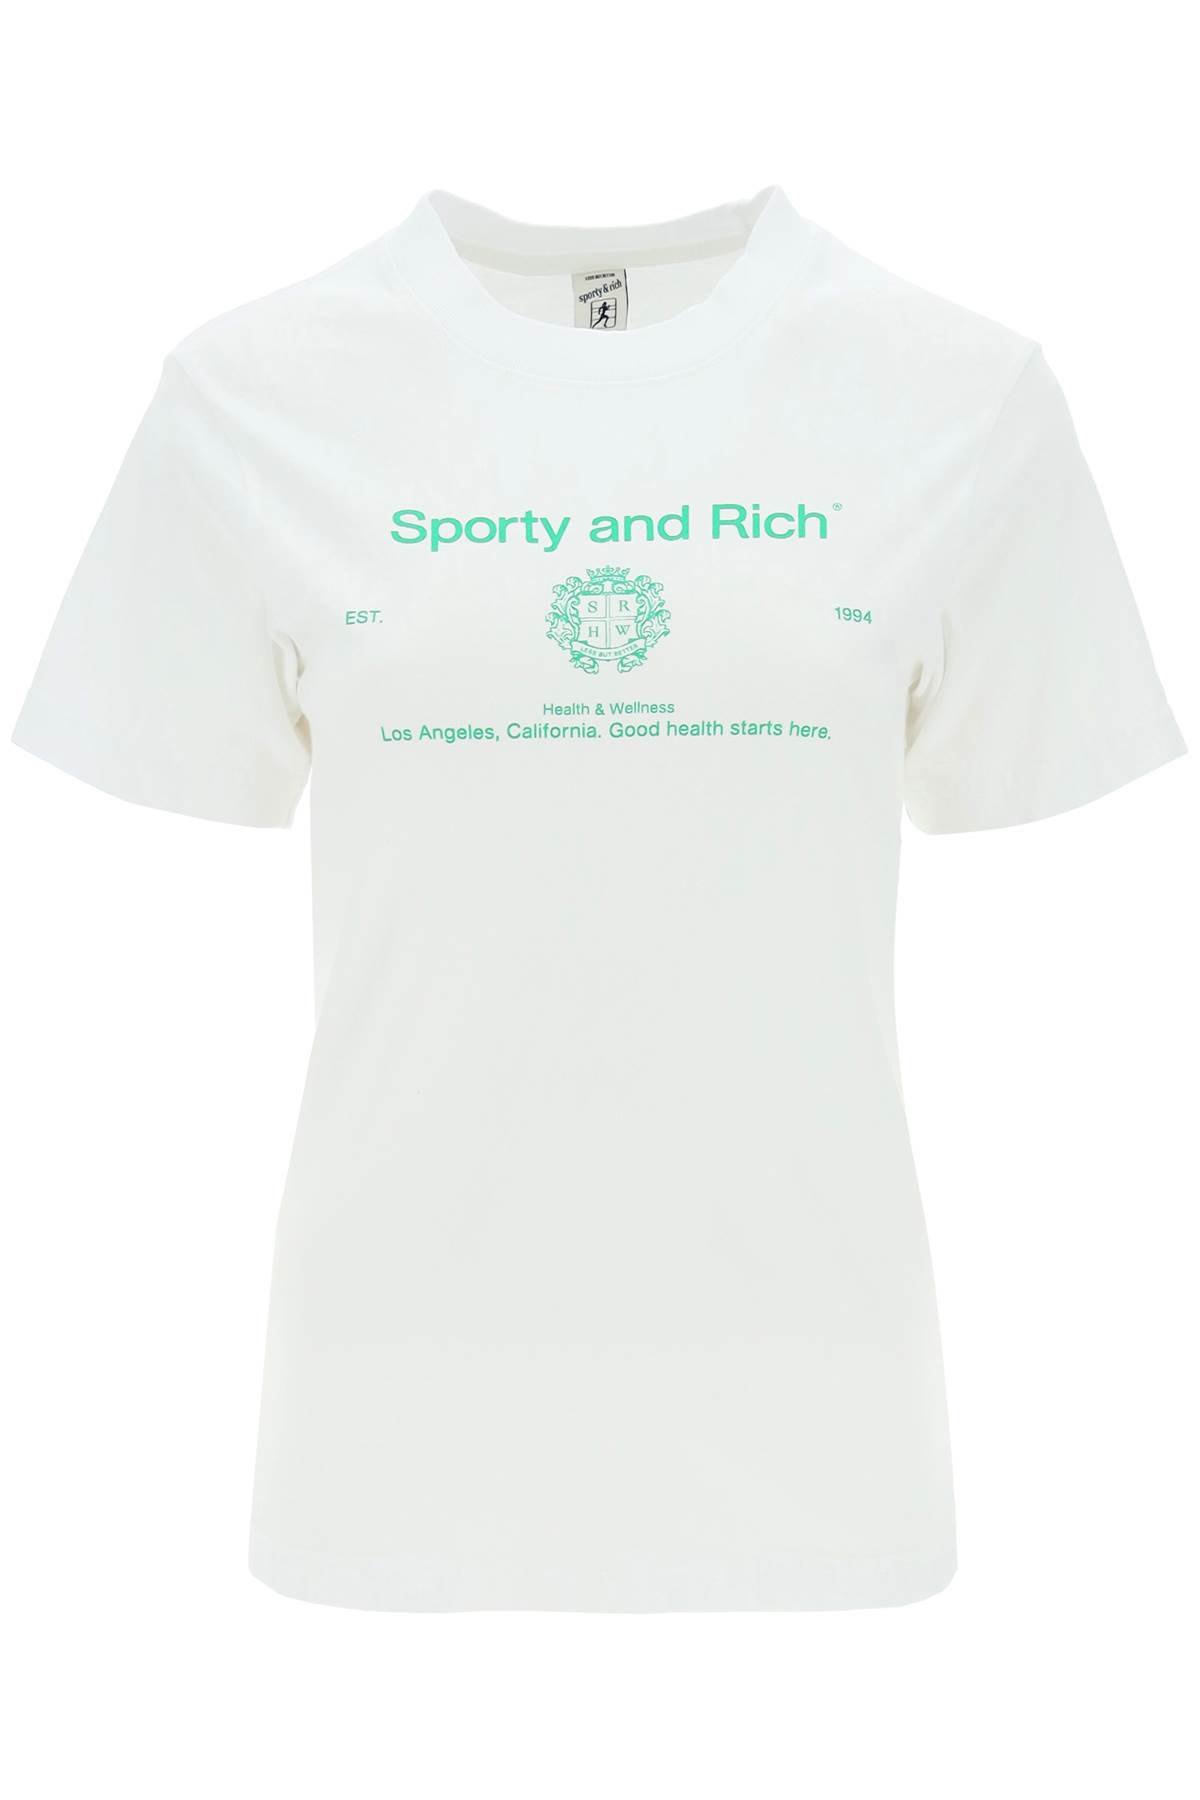 Sporty & Rich crest T-shirt